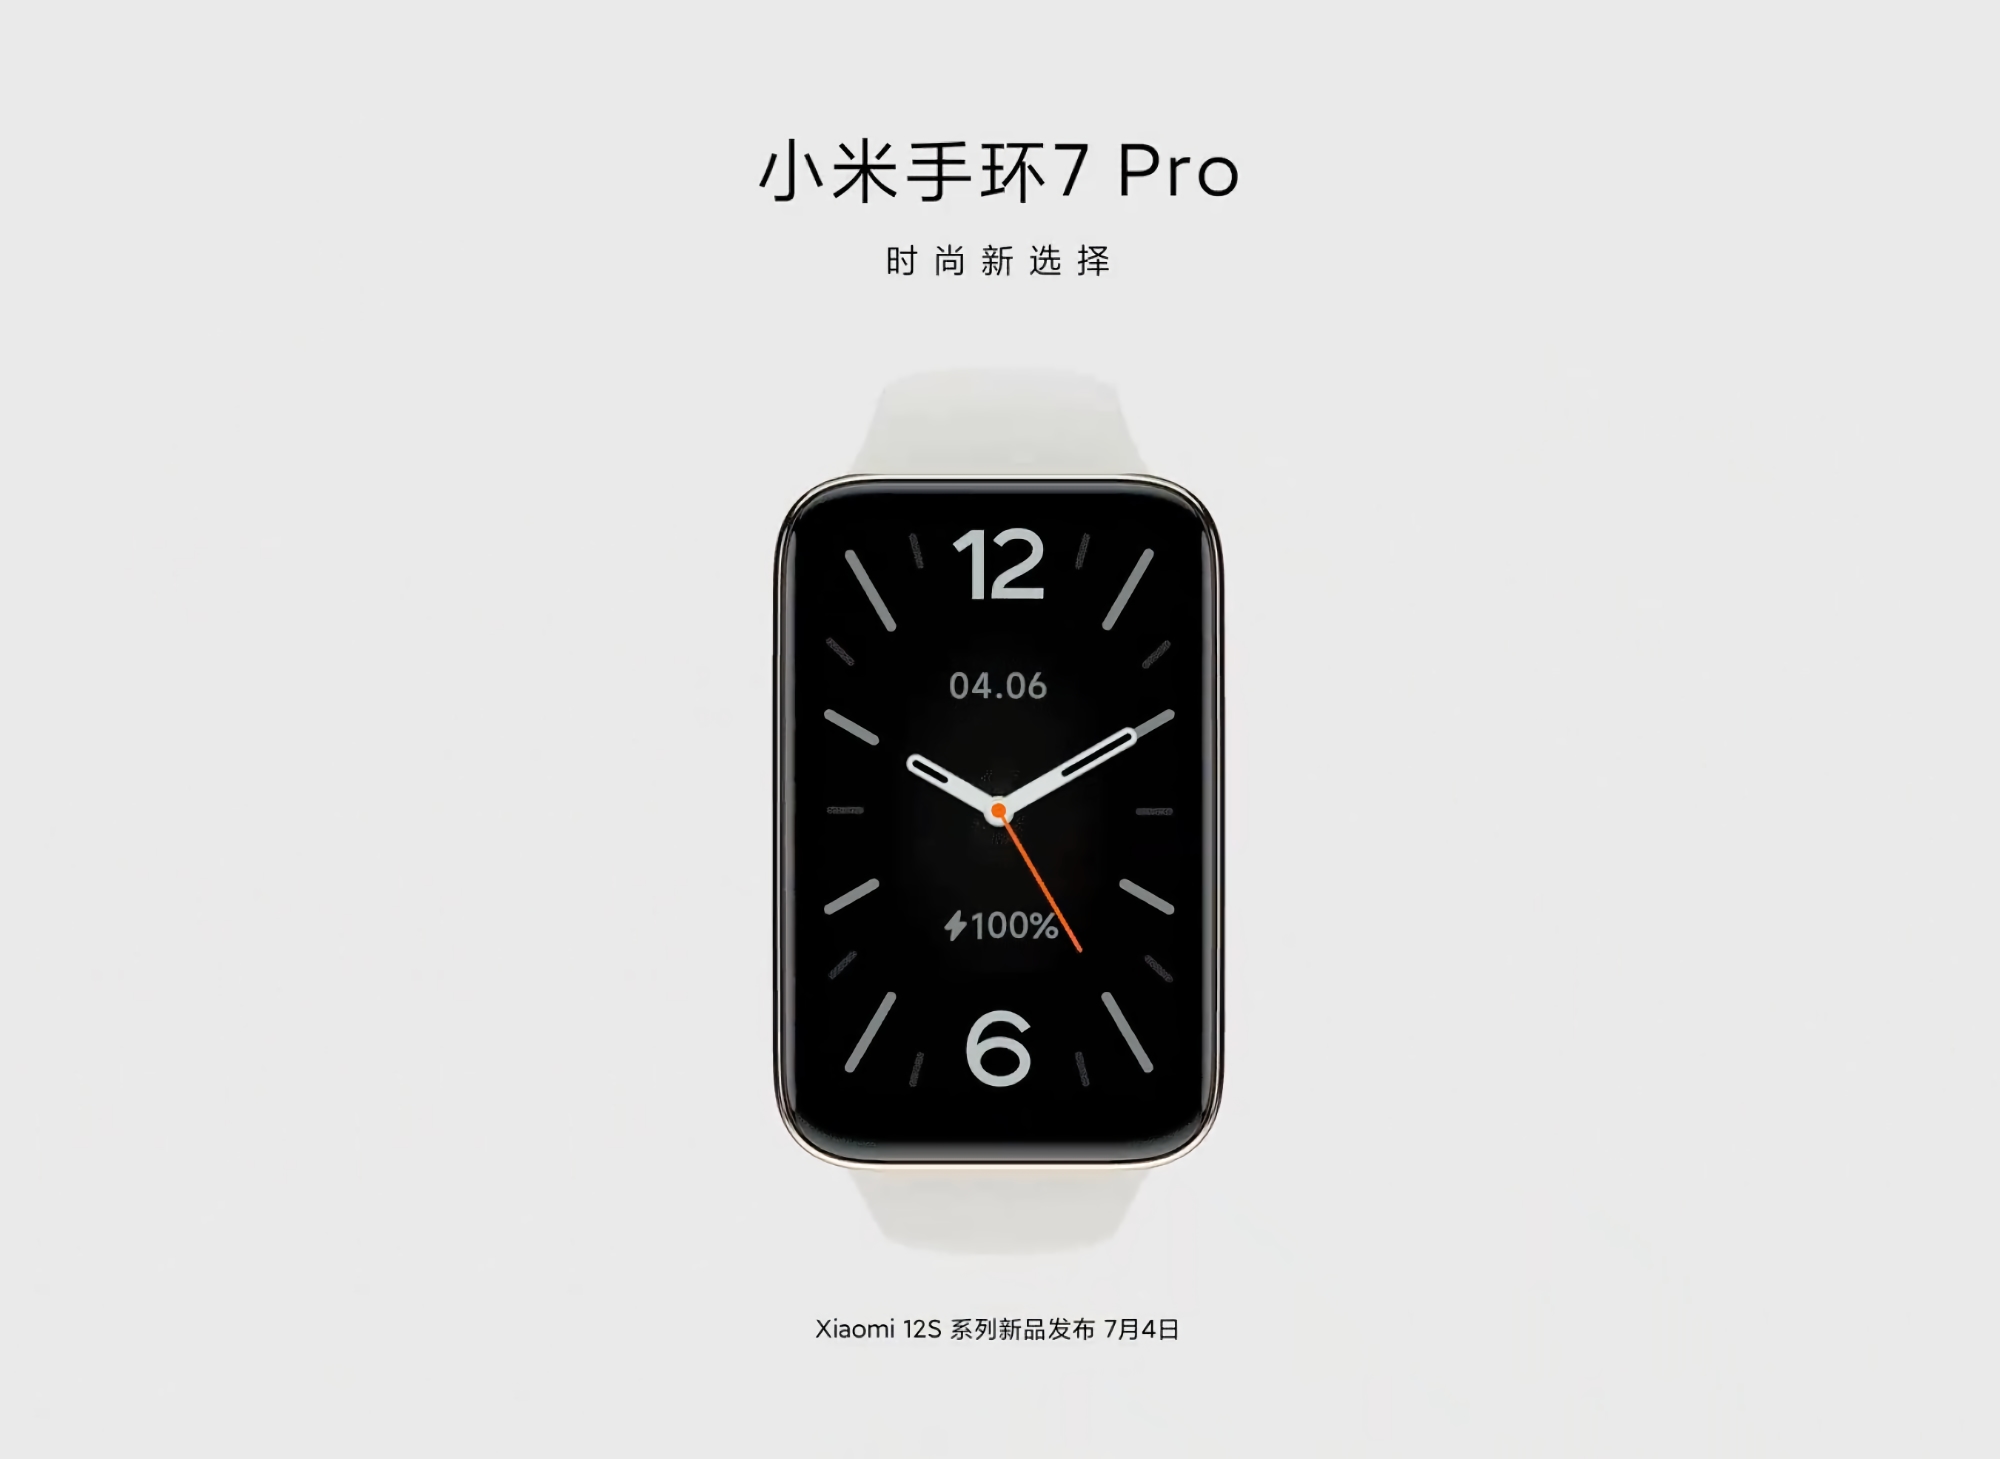 Offiziell: Das Xiaomi Mi Band 7 Pro wird zusammen mit der Xiaomi 12S-Smartphone-Reihe am 4. Juli vorgestellt